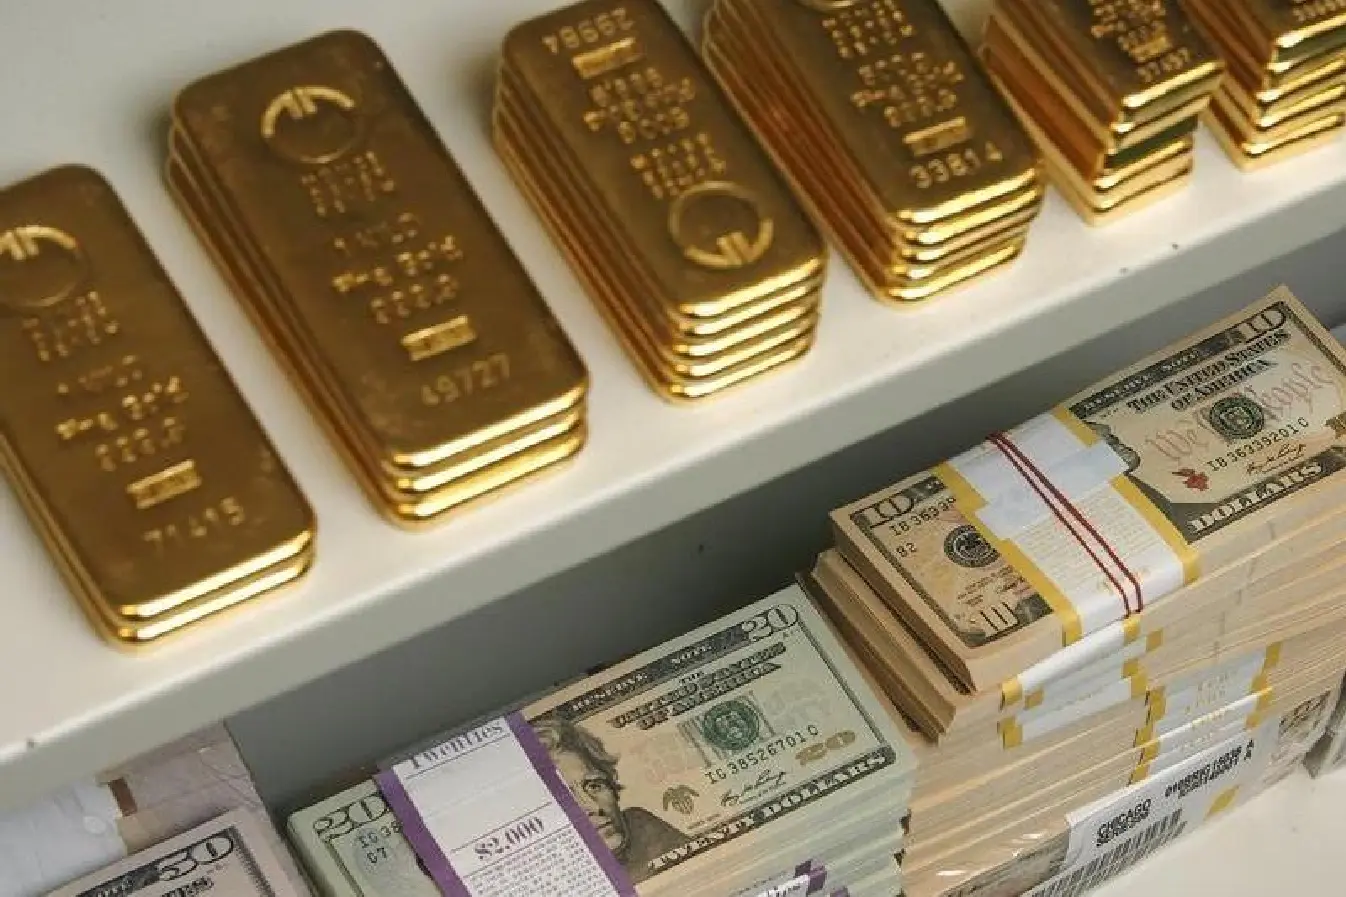 Gold scales 2-week peak as dollar